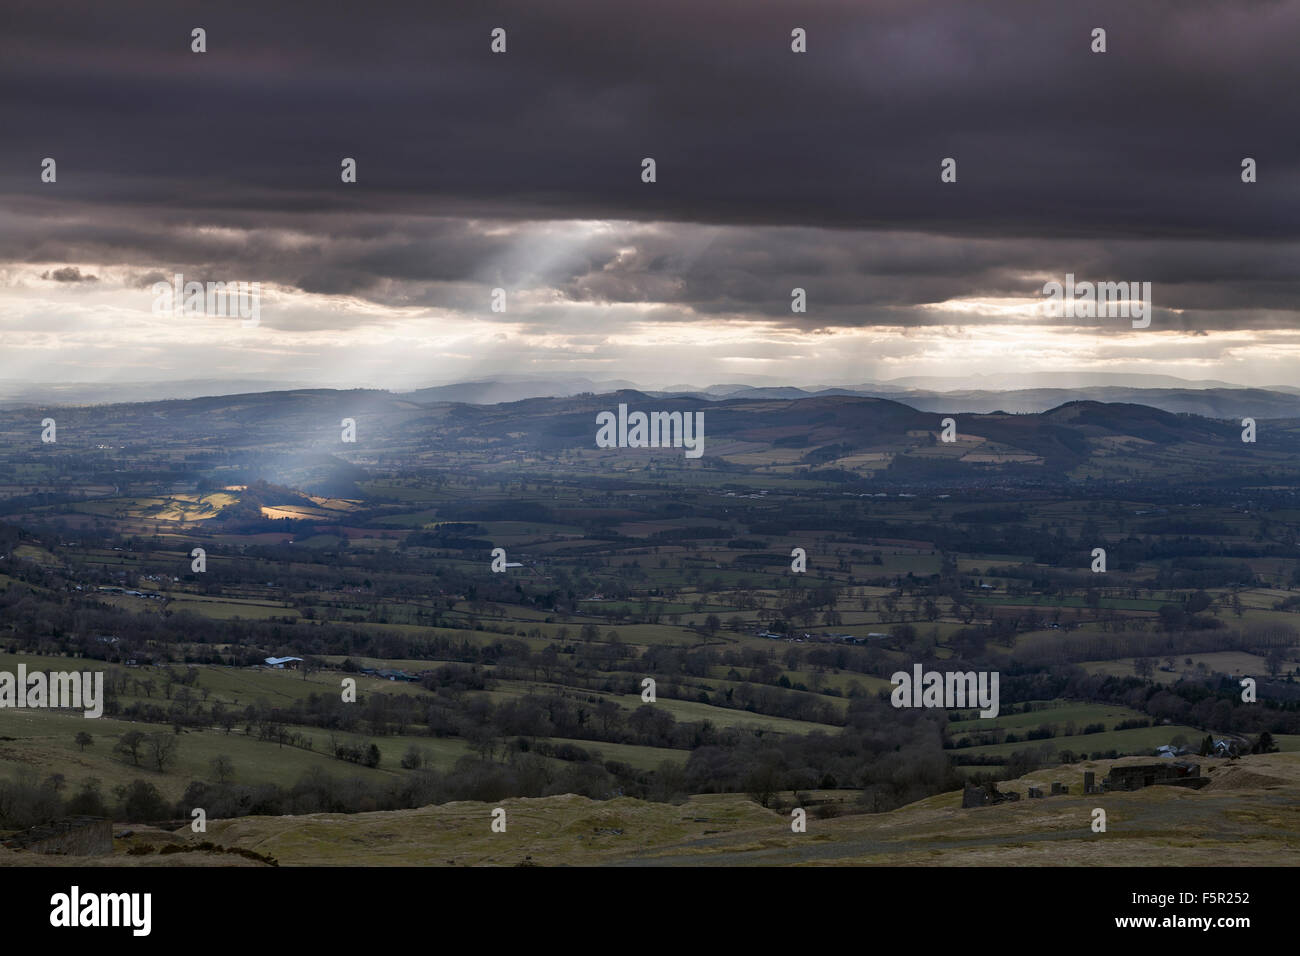 Rayos crepusculares atravesar las nubes iluminando campos en Shropshire, desde Clee colina, mirando hacia el País de Gales Foto de stock